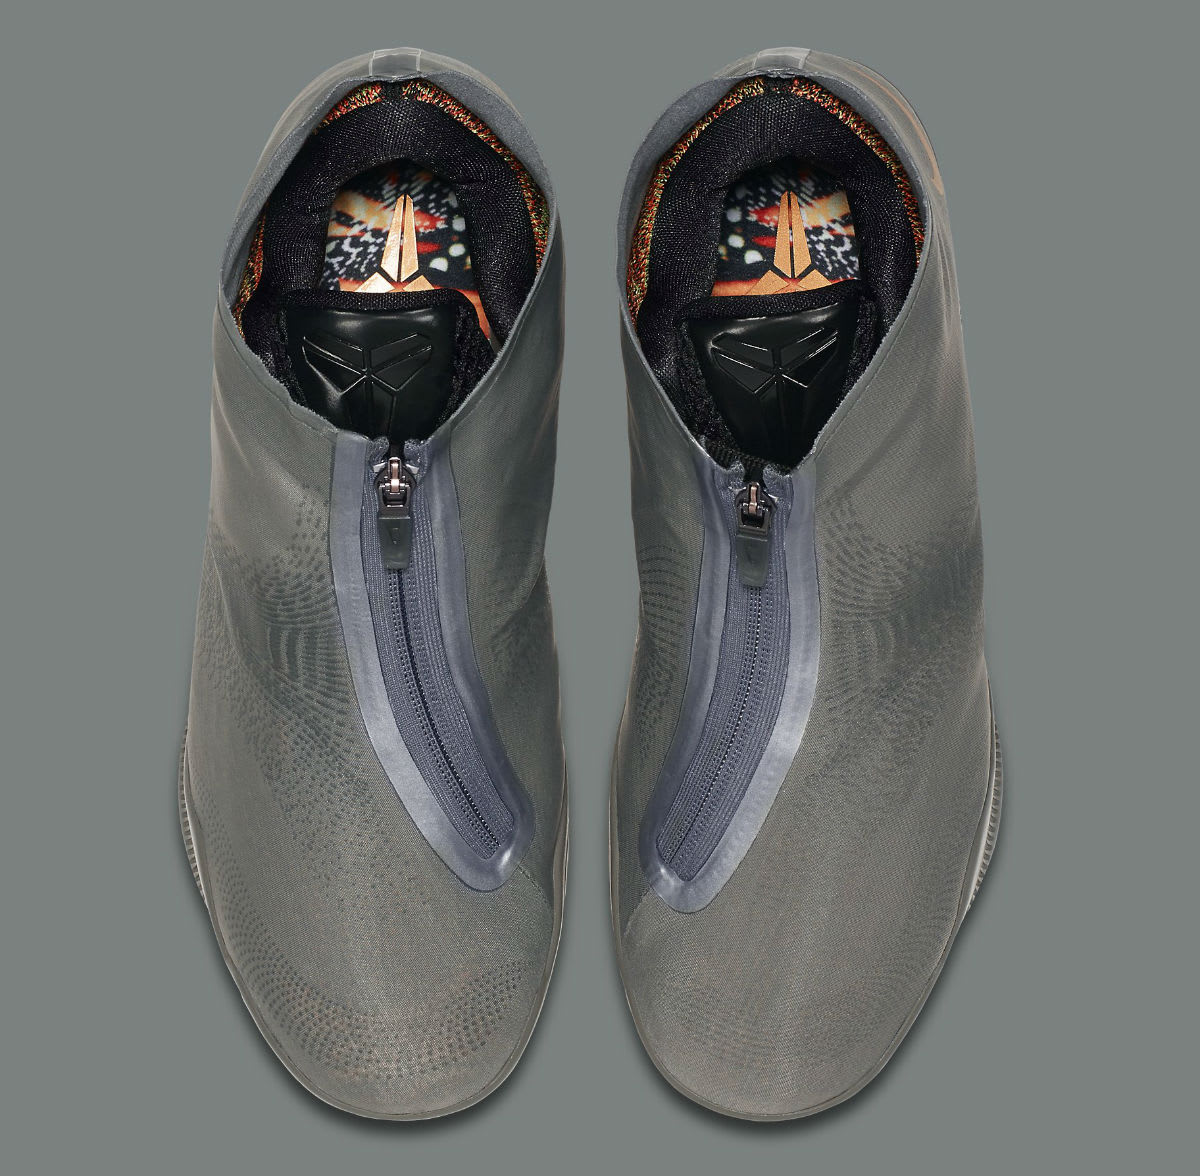 Nike Kobe 11 ALT Grey Release Date 